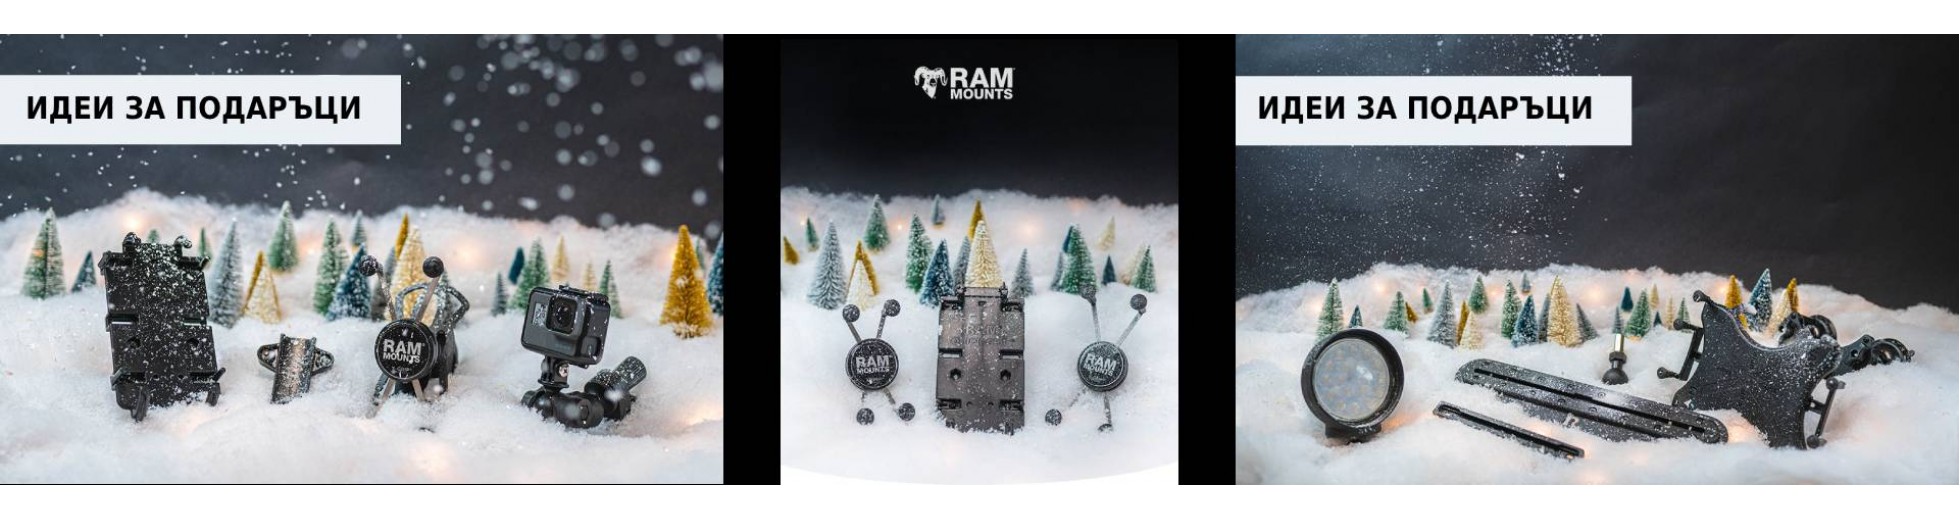 Ram Christmas